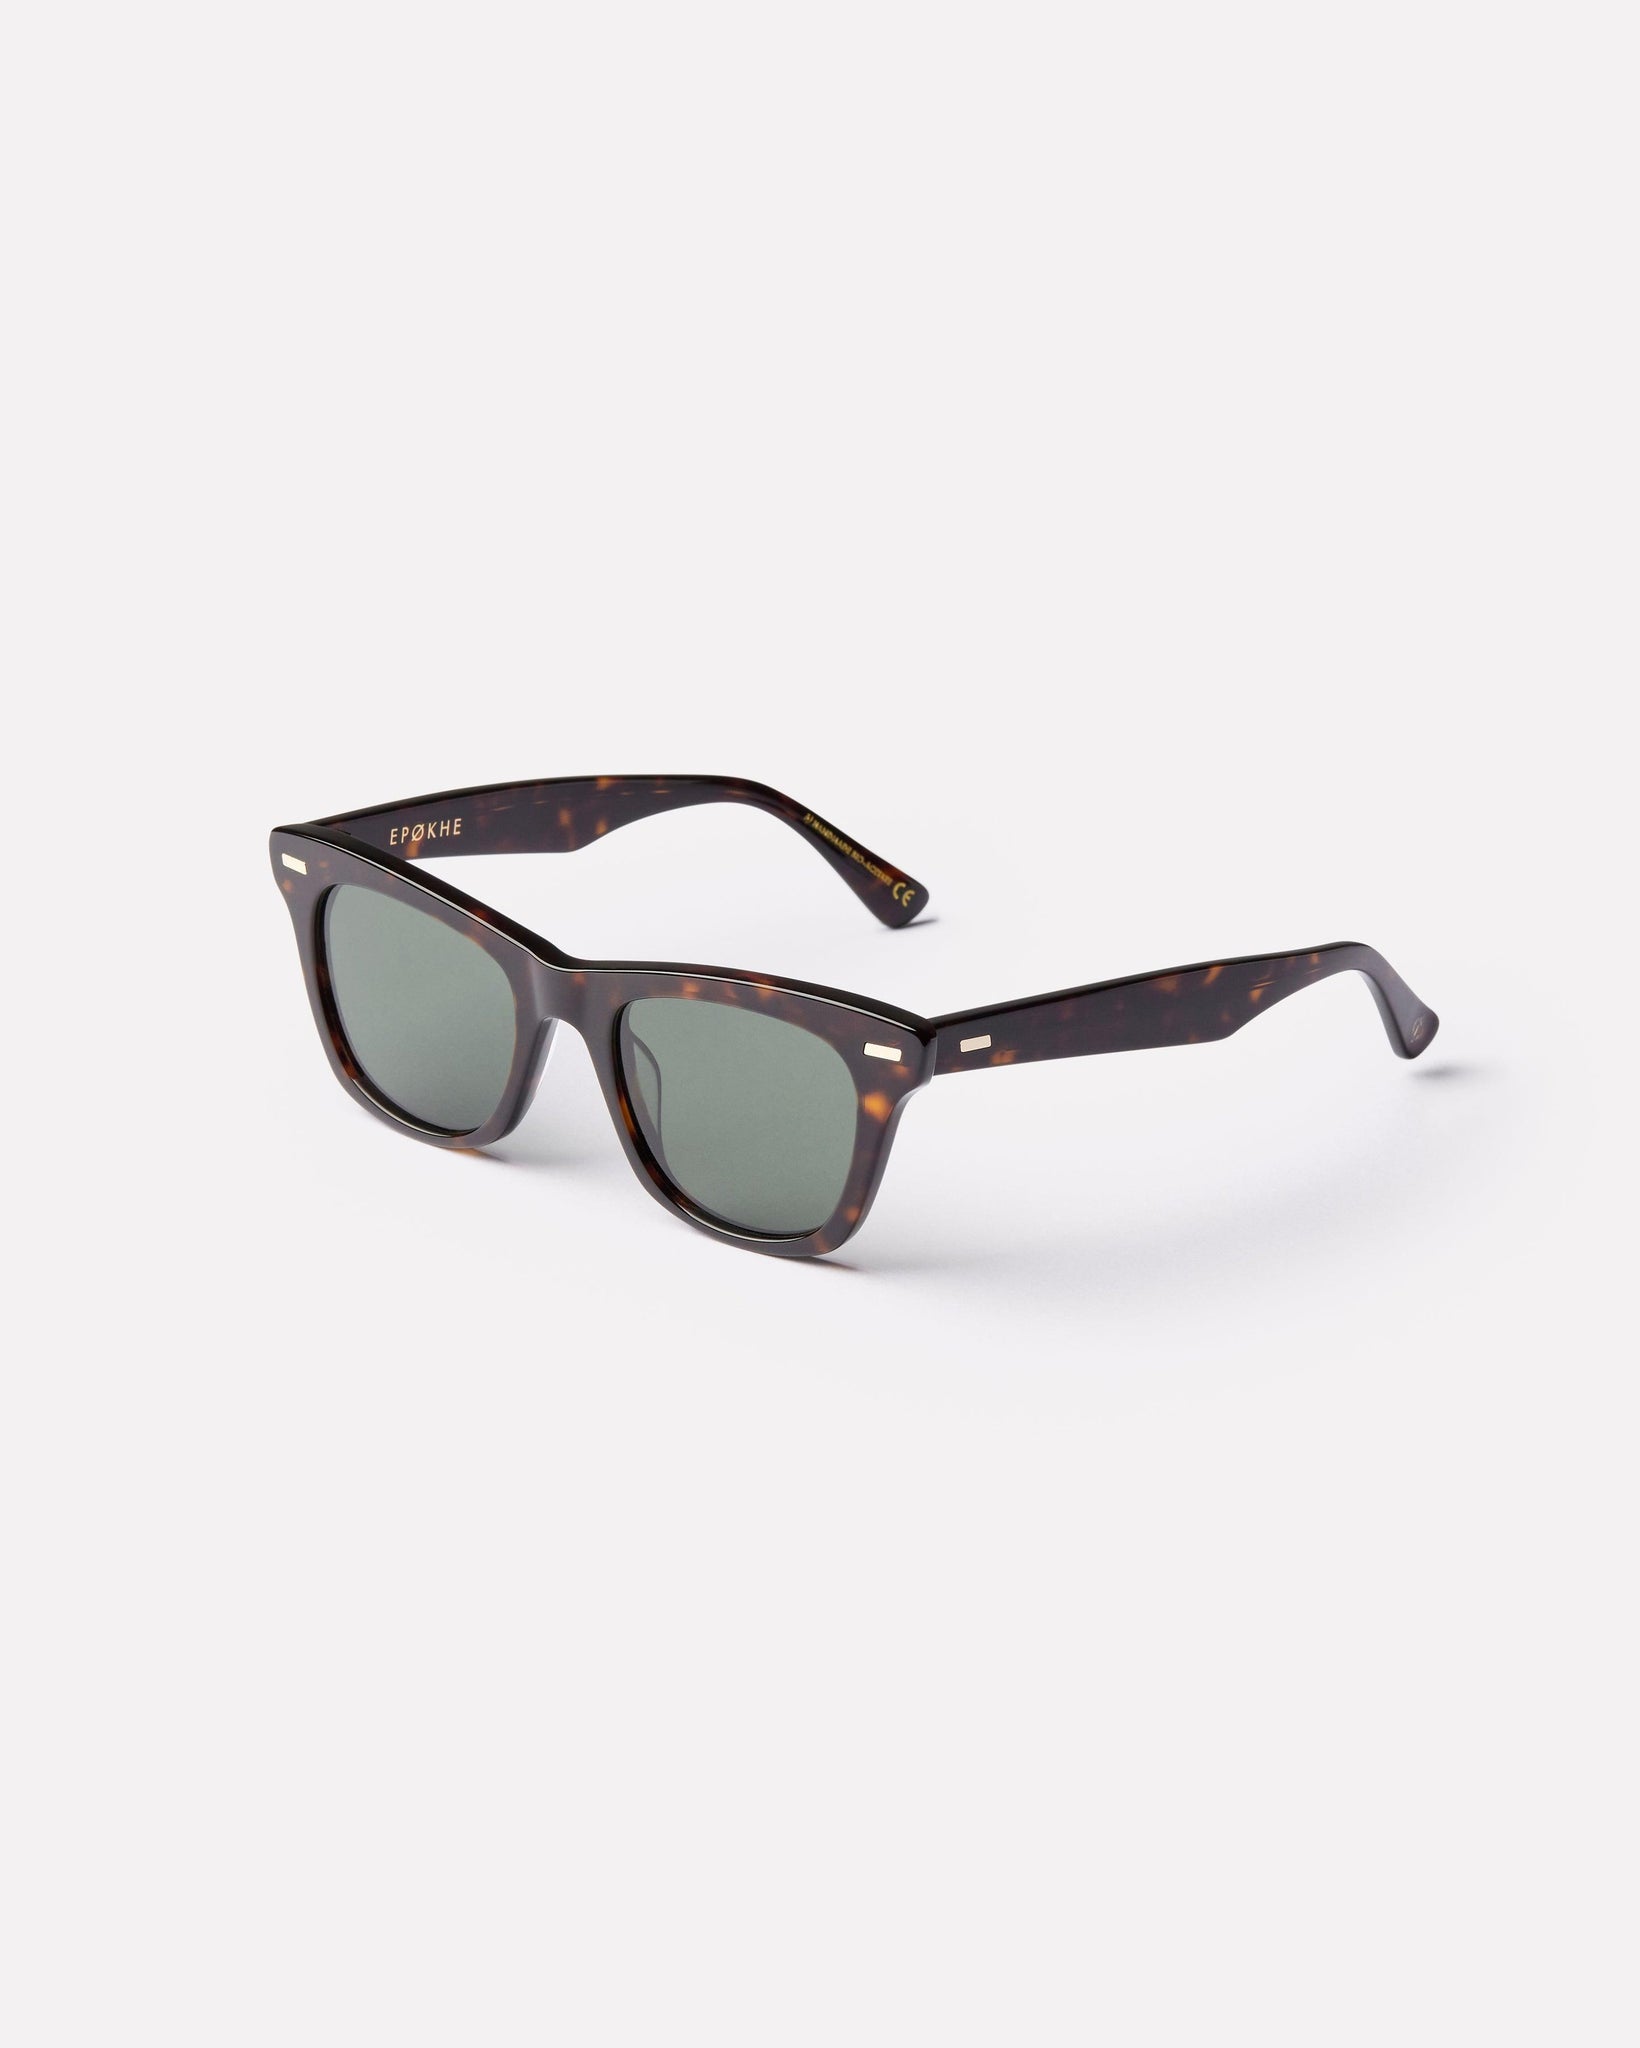 SZEX - Tortoise Polished / Green Polarized - Sunglasses - EPOKHE EYEWEAR